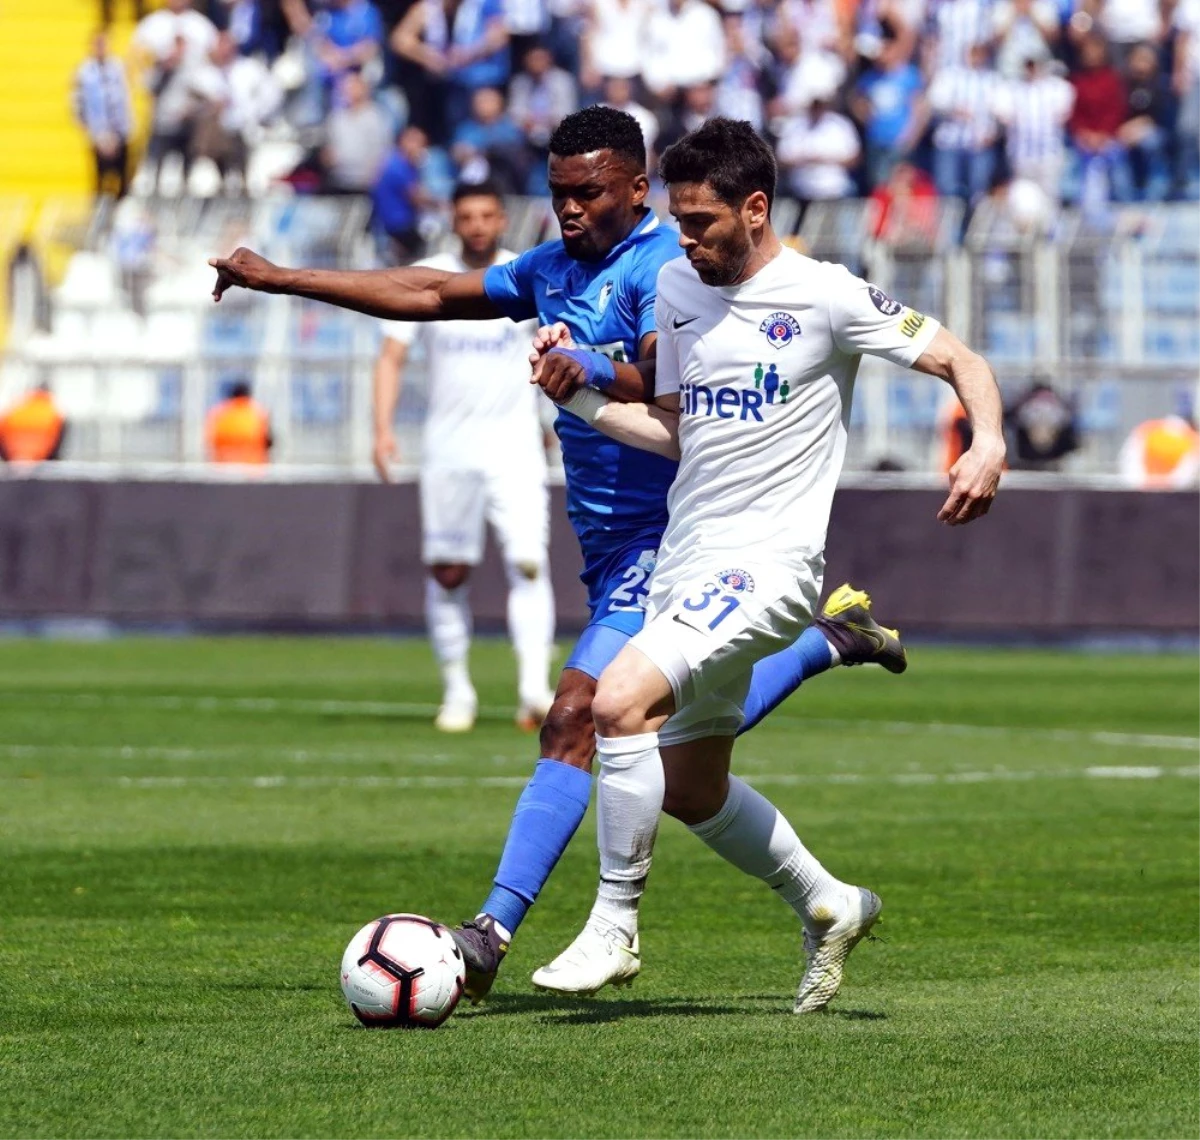 Spor Toto Süper Lig: Kasımpaşa: 1 - Bb Erzurumspor: 0 (İlk Yarı)